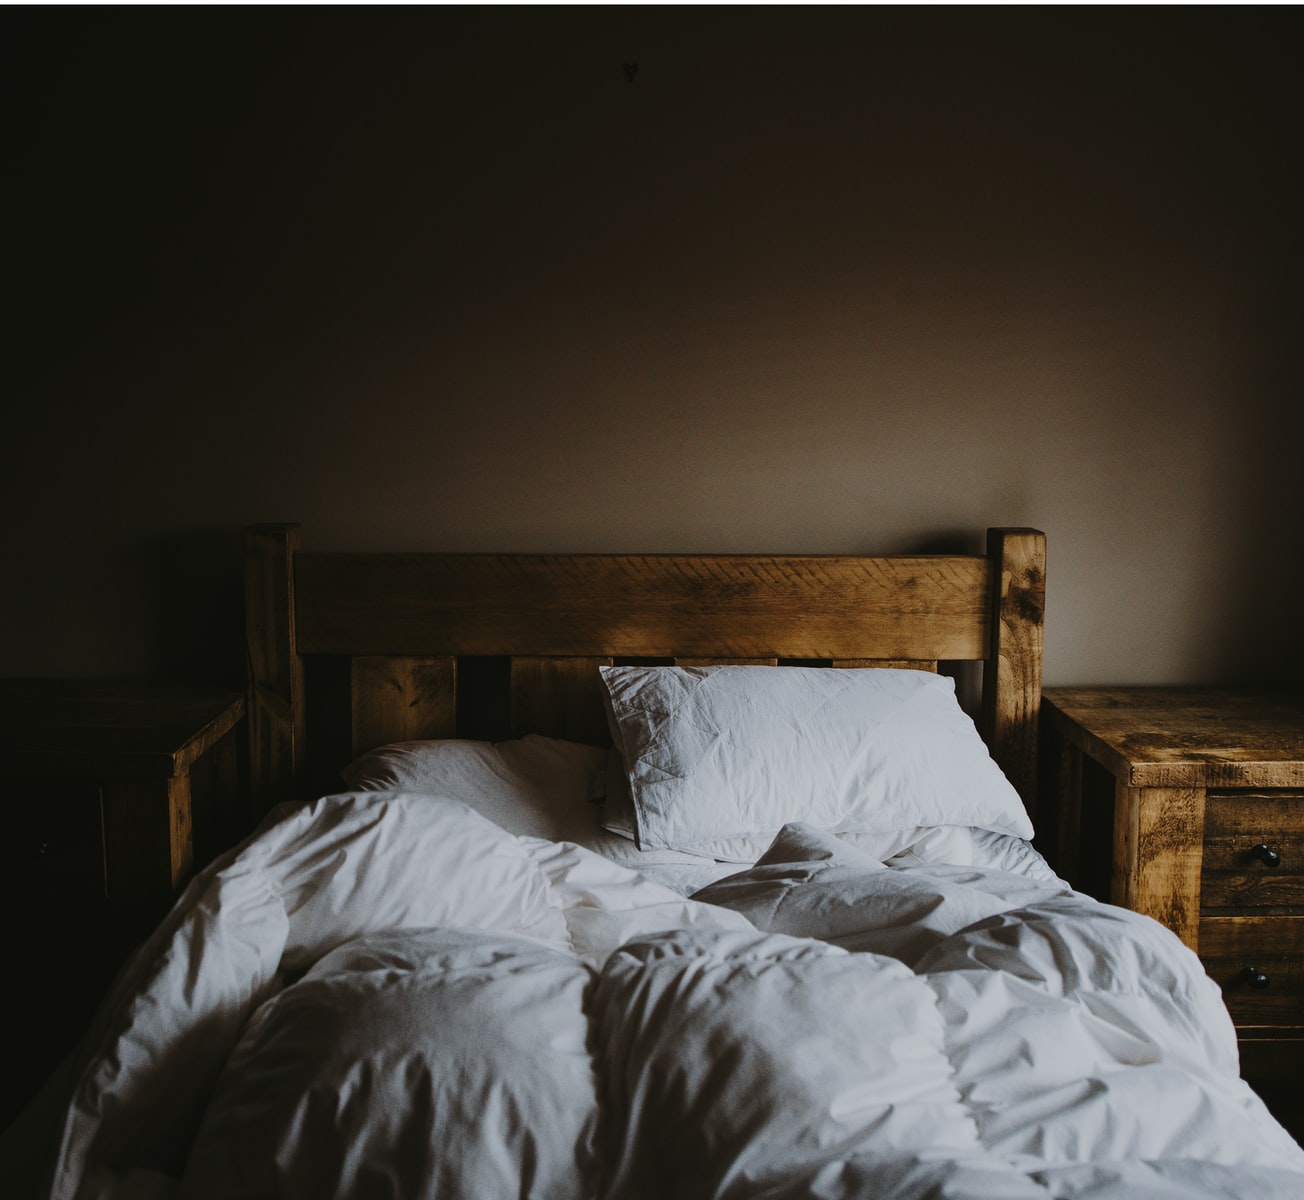 Comment soigner son problème d’insomnie de manière efficace ?